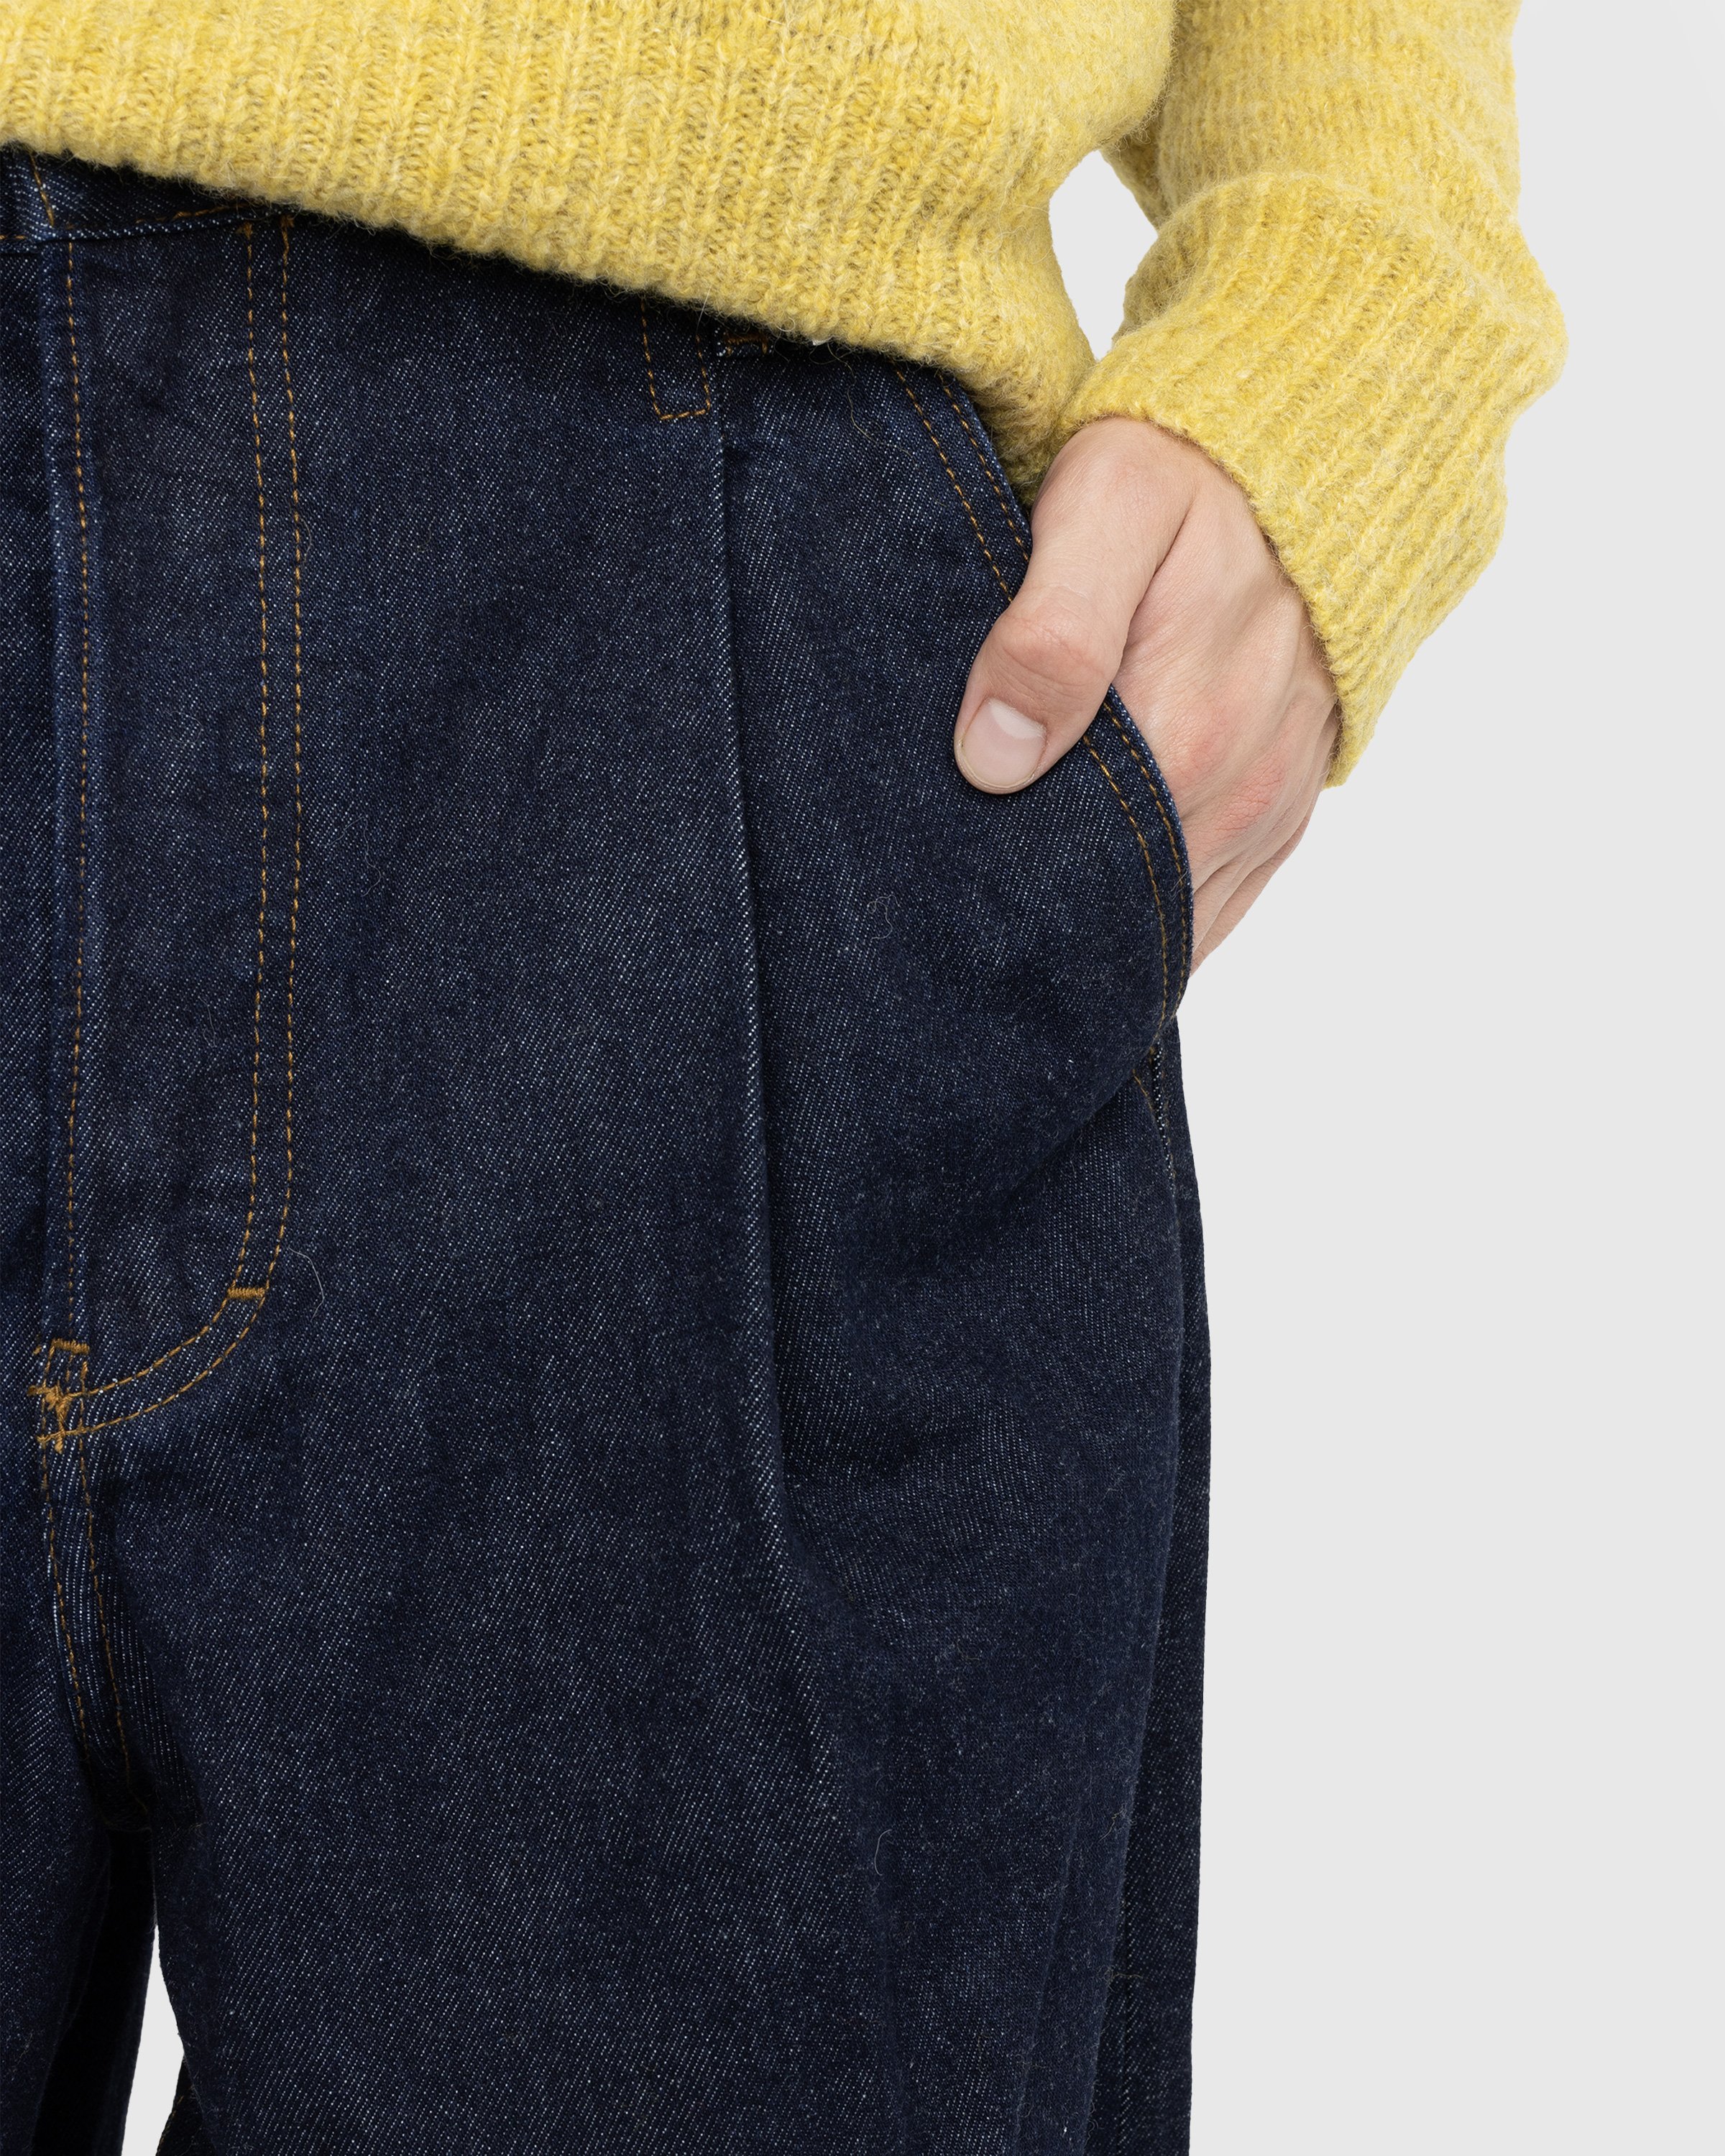 Dries van Noten - Penning Pants Indigo - Clothing - Blue - Image 4